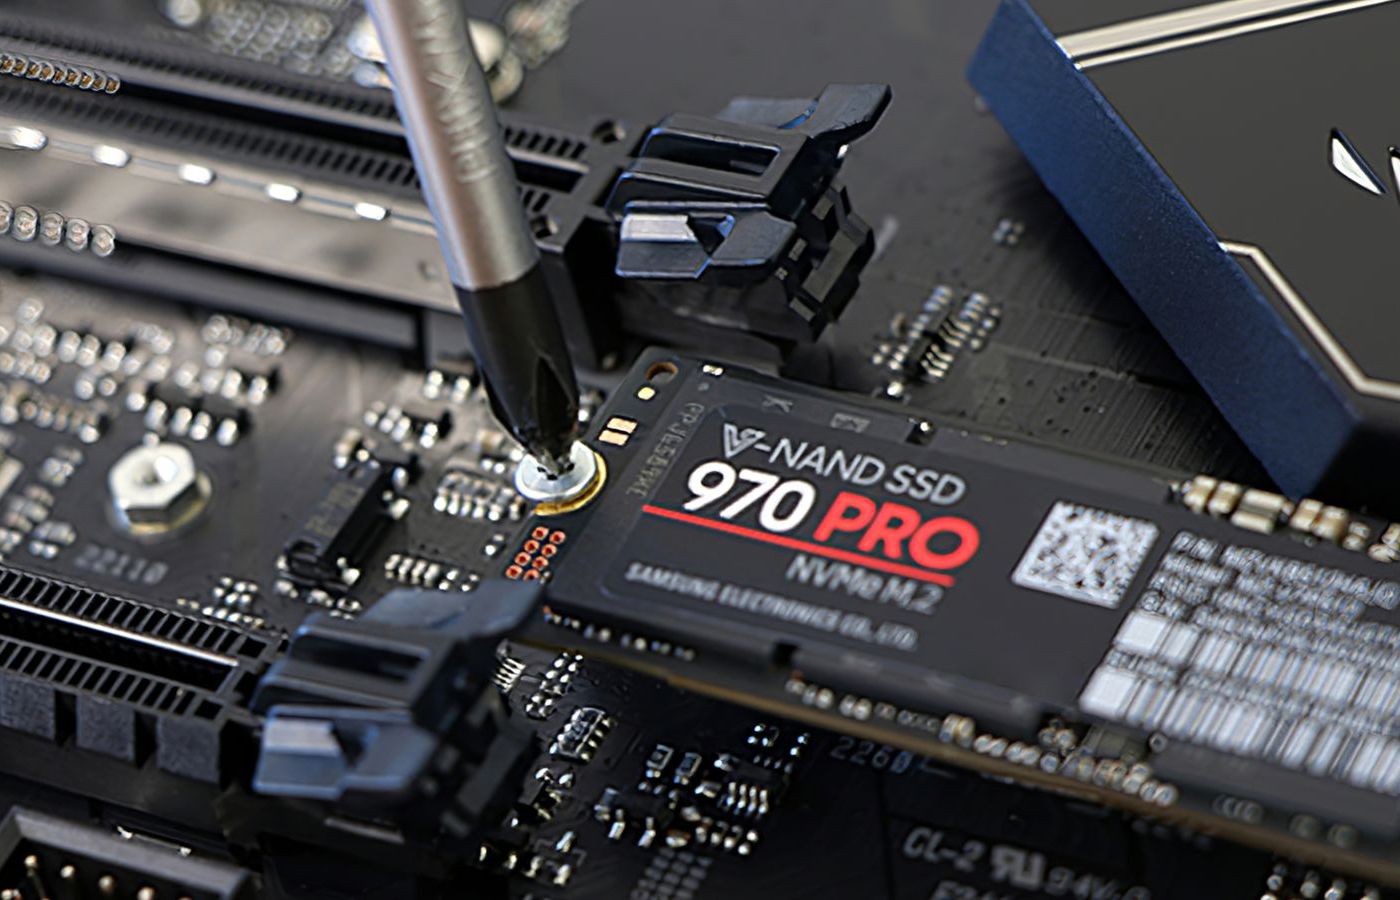 Samsung 970 PRO recension: Kungen av PCIe Gen 3 är slagen, men fortfarande modig